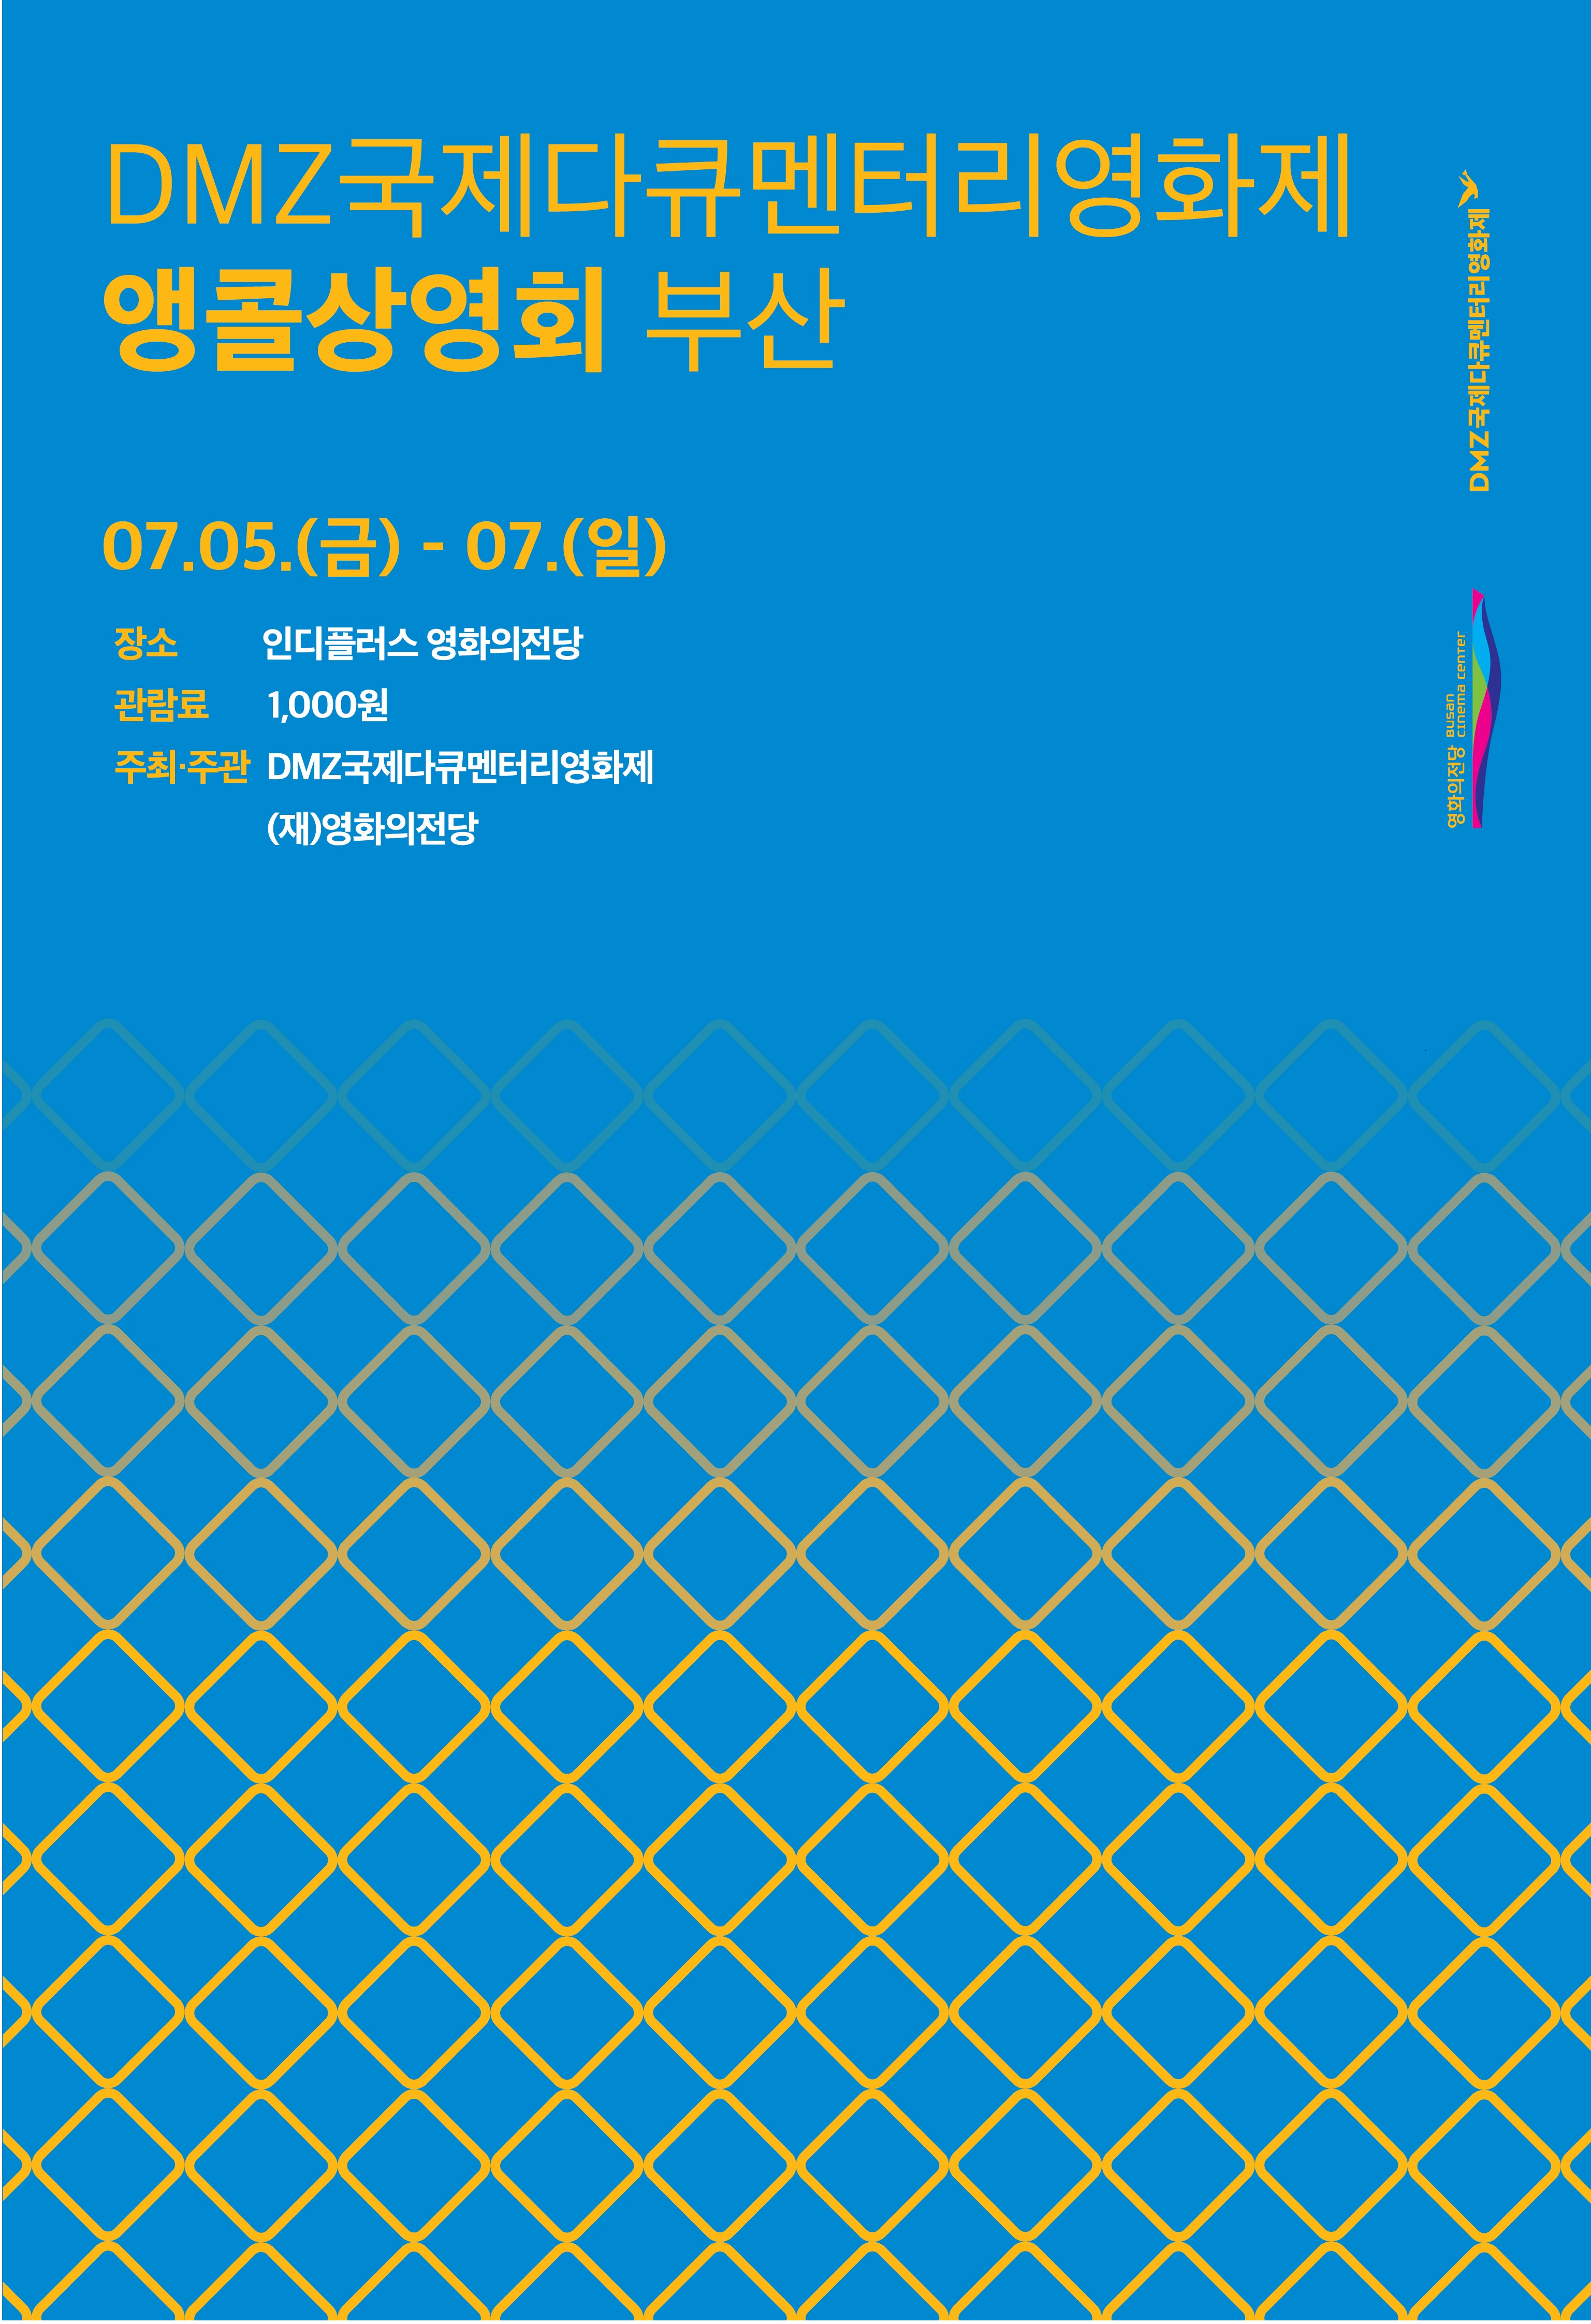 DMZ국제다큐멘터리영화제 앵콜상영회 부산 07.05(금) - 07(일)